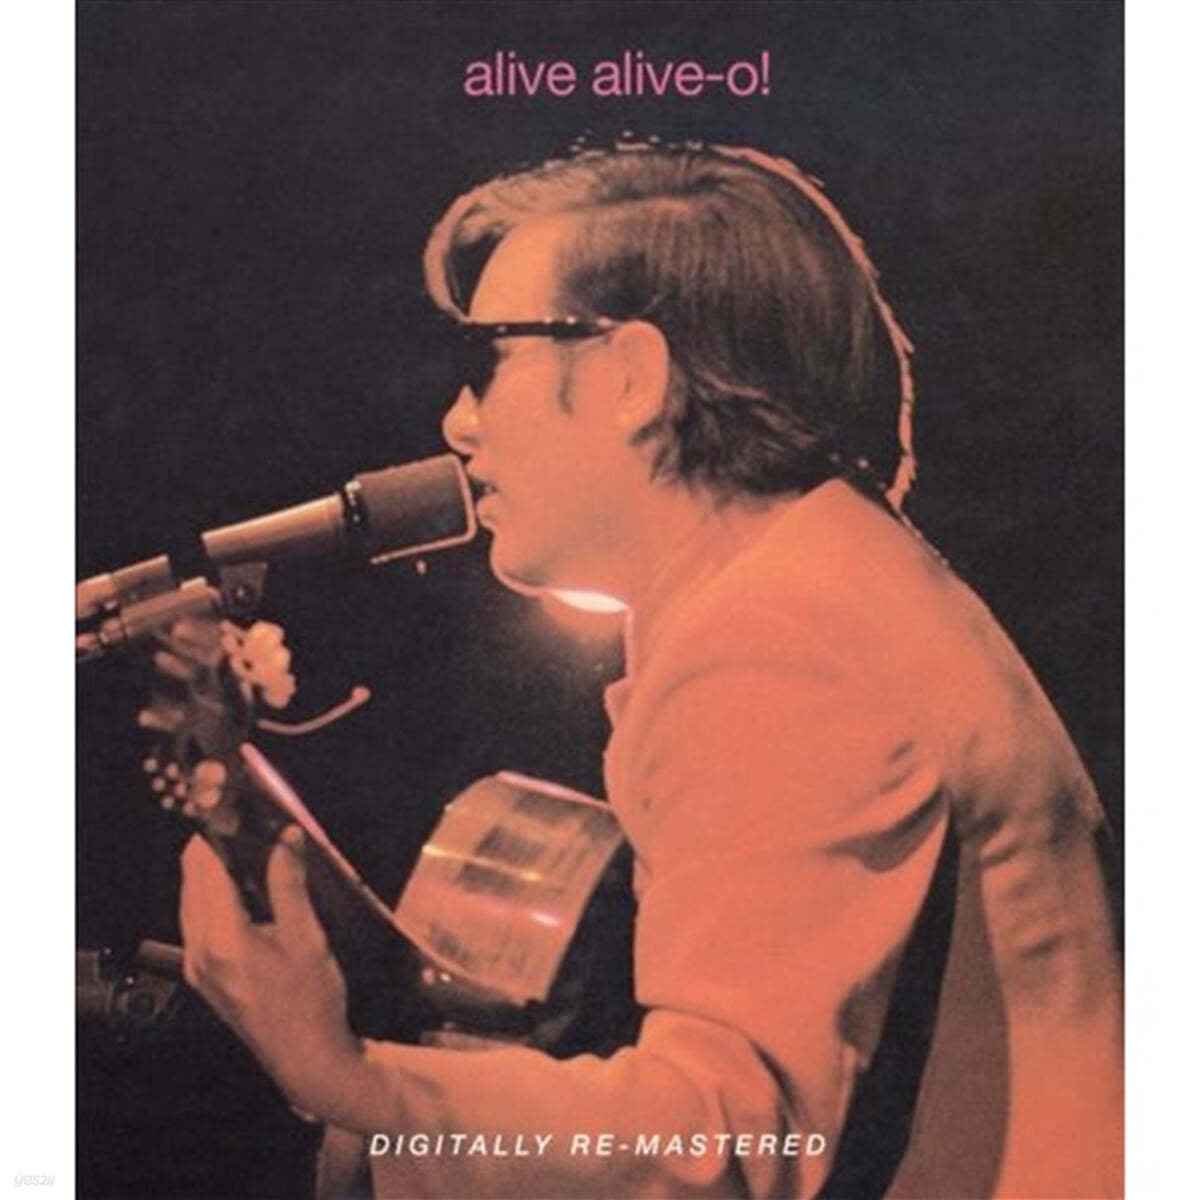 Jose Feliciano (호세 펠리시아노) - Alive Alive-O! / Jose Feliciano In Concert At The London Palladium 